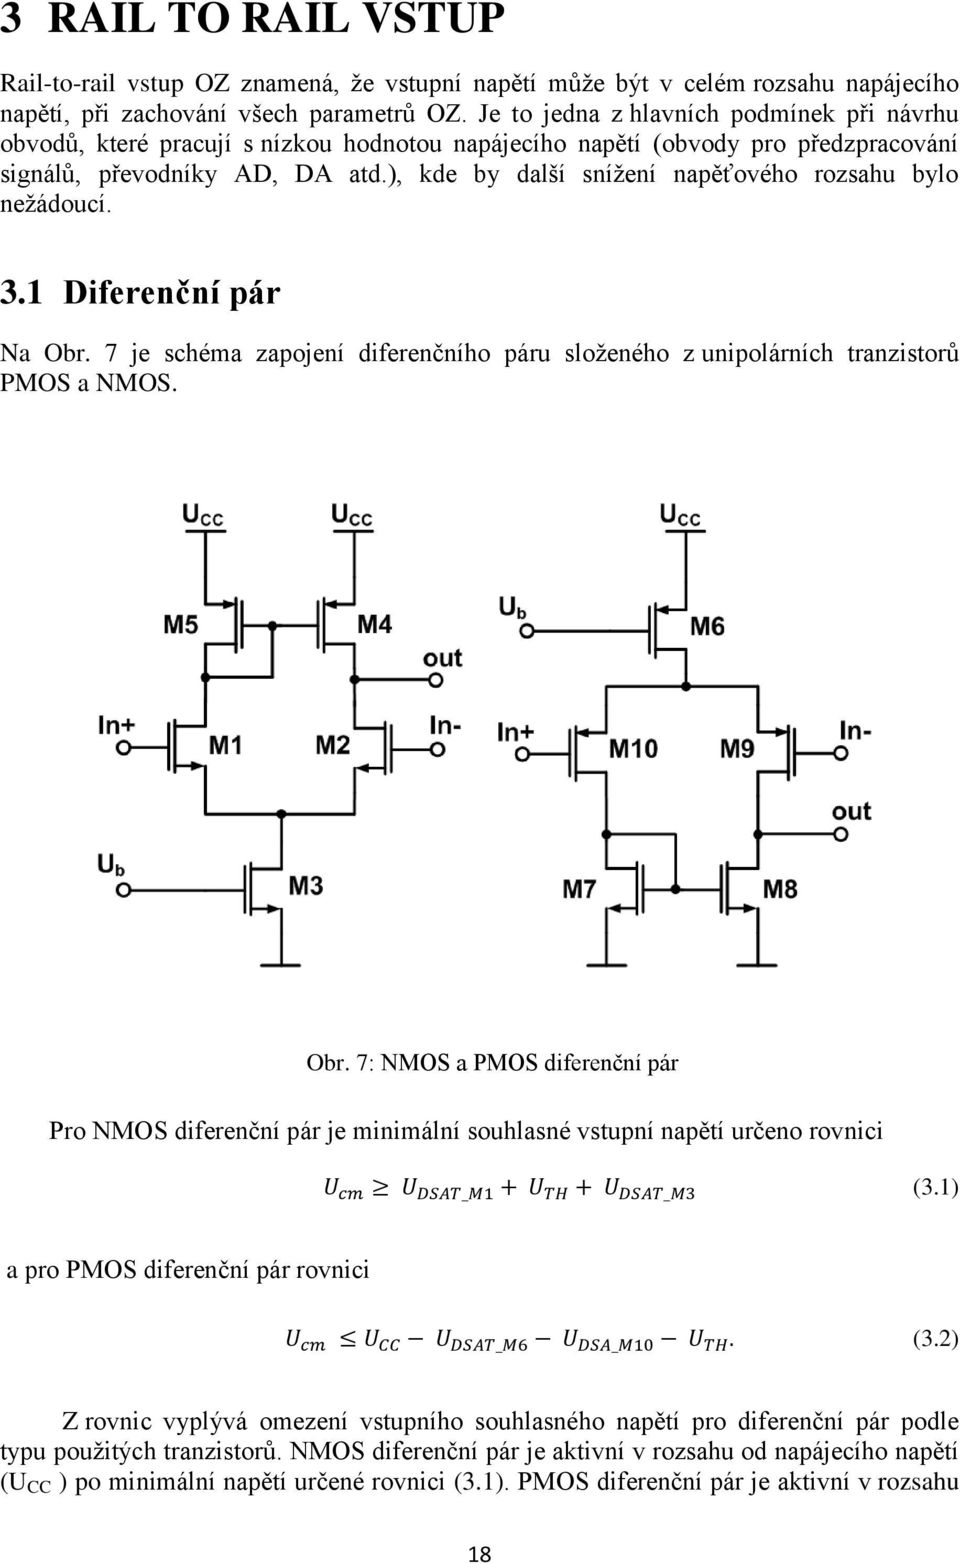 ), kde by další snížení napěťového rozsahu bylo nežádoucí. 3.1 Diferenční pár Na Obr. 7 je schéma zapojení diferenčního páru složeného z unipolárních tranzistorů PMOS a NMOS. Obr. 7: NMOS a PMOS diferenční pár Pro NMOS diferenční pár je minimální souhlasné vstupní napětí určeno rovnici (3.